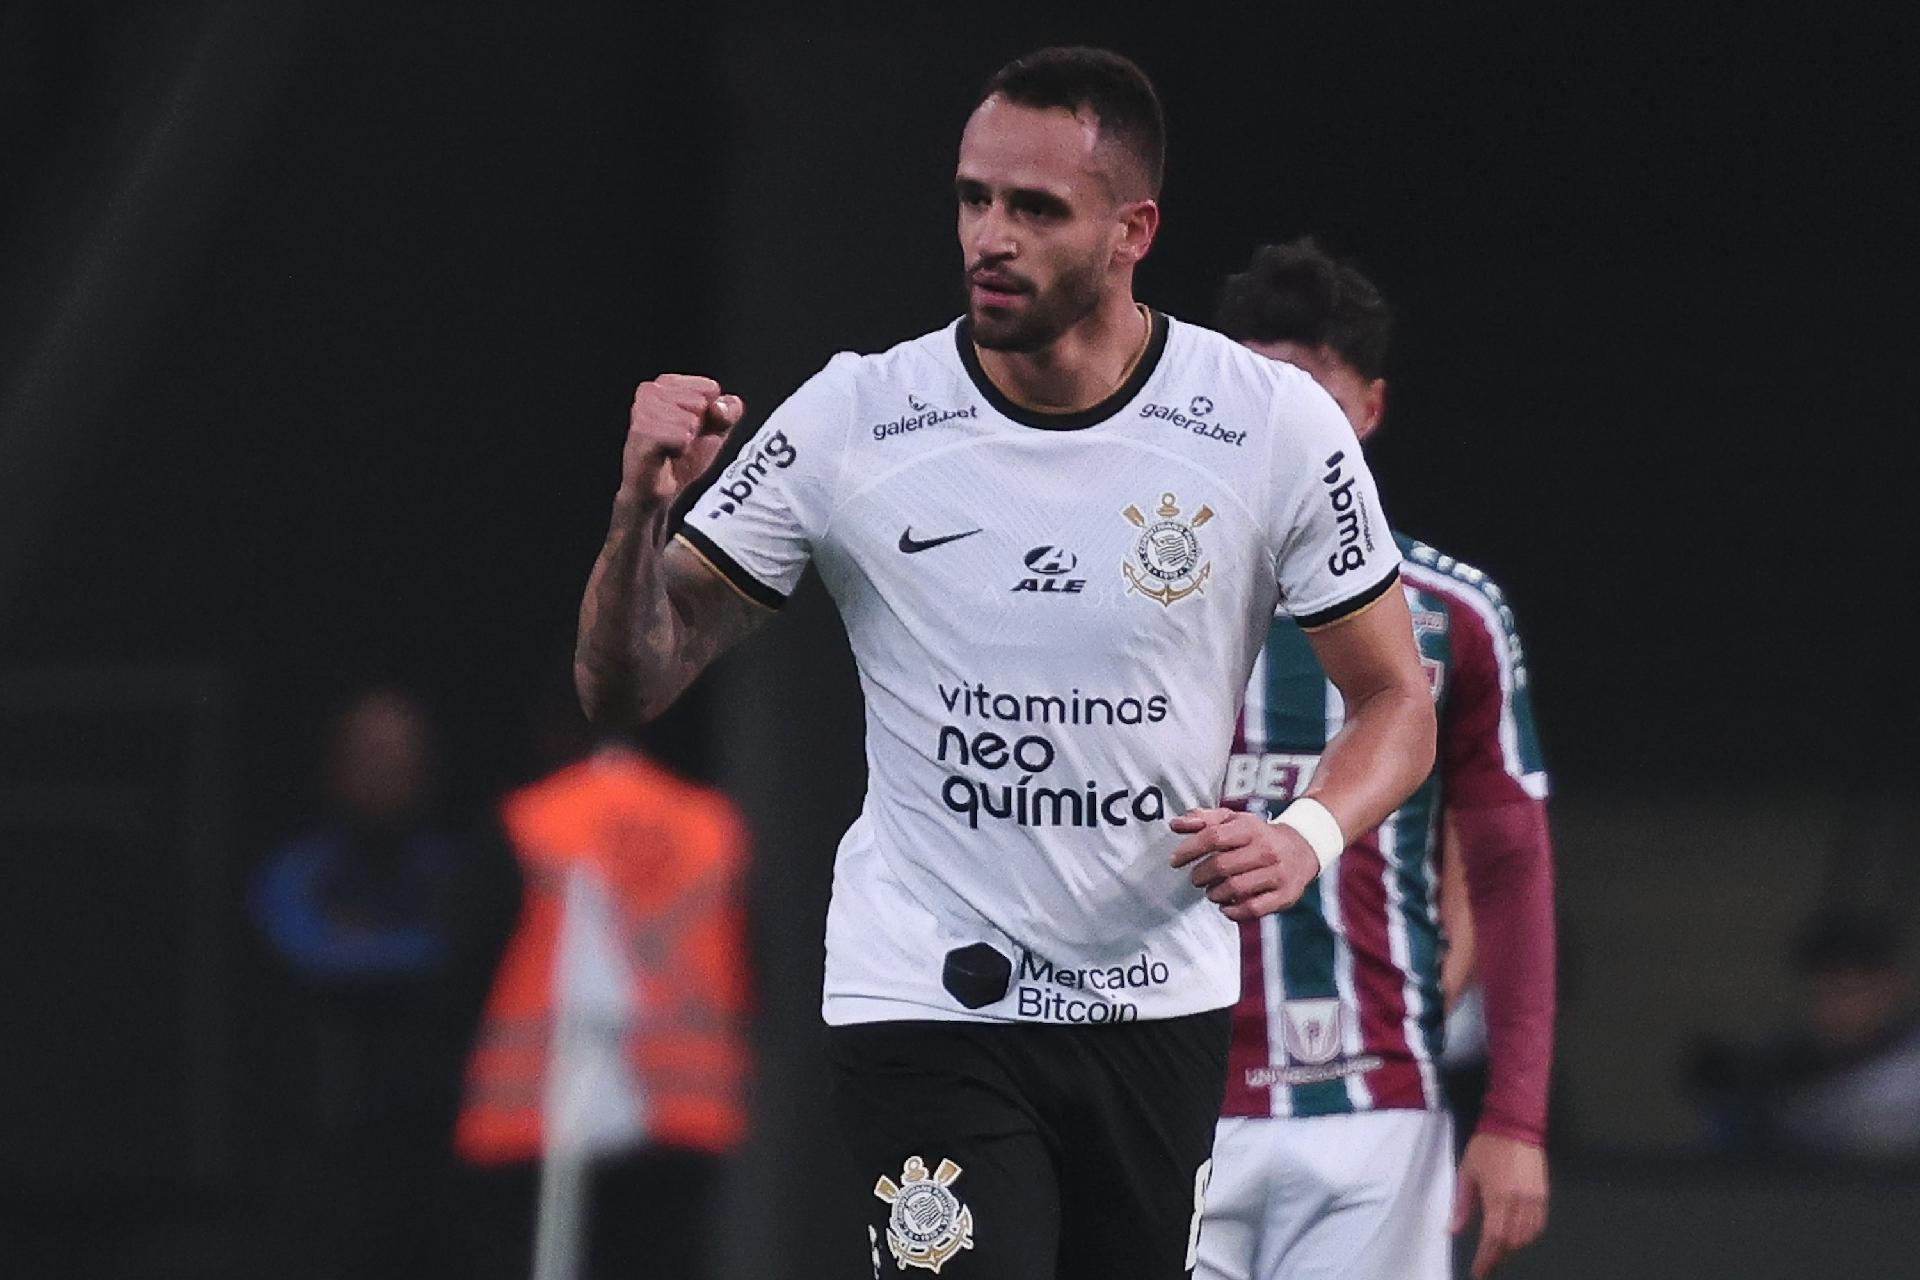 Lateral projeta duelo contra o Palmeiras: Todos os jogos são decisões -  Fluminense: Últimas notícias, vídeos, onde assistir e próximos jogos